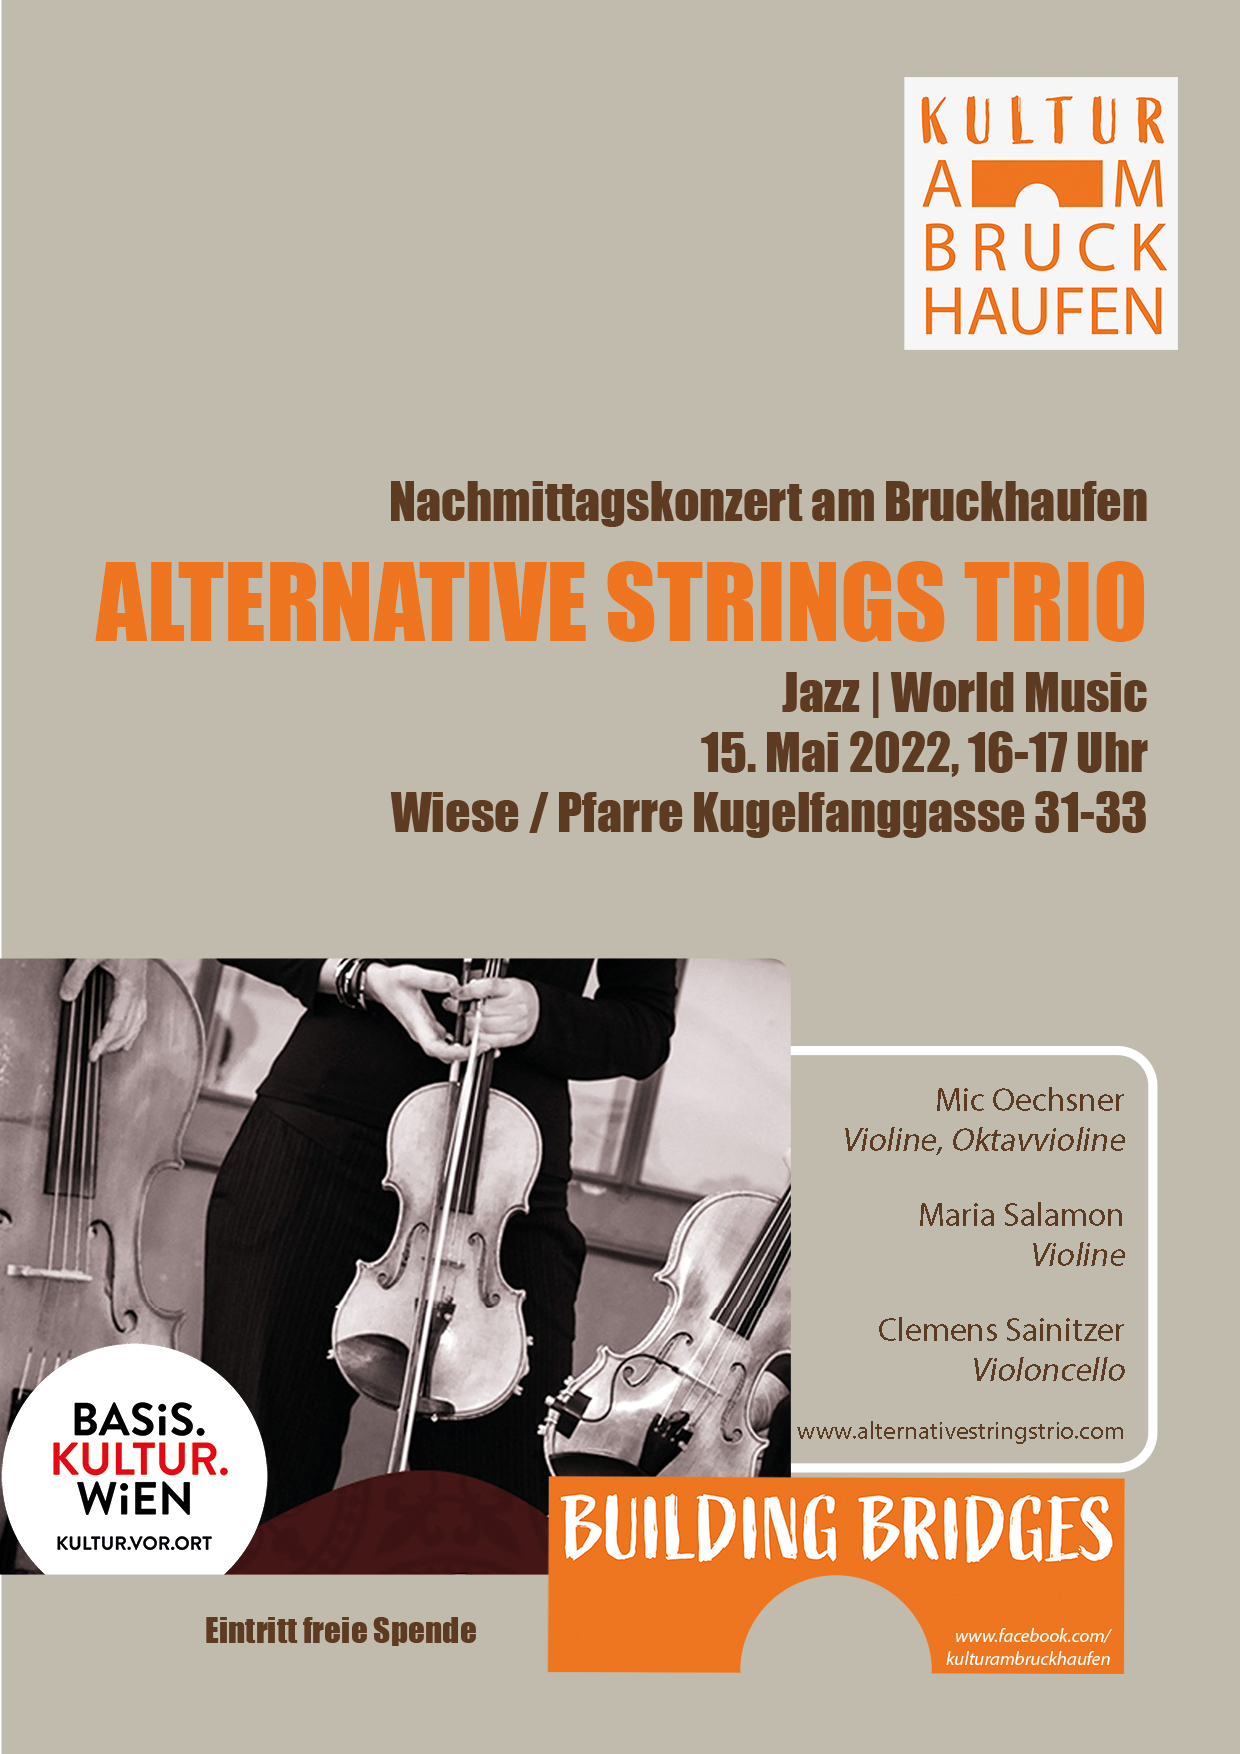 Nachmittagskonzert am Bruckhaufen: Alternative Strings Trio